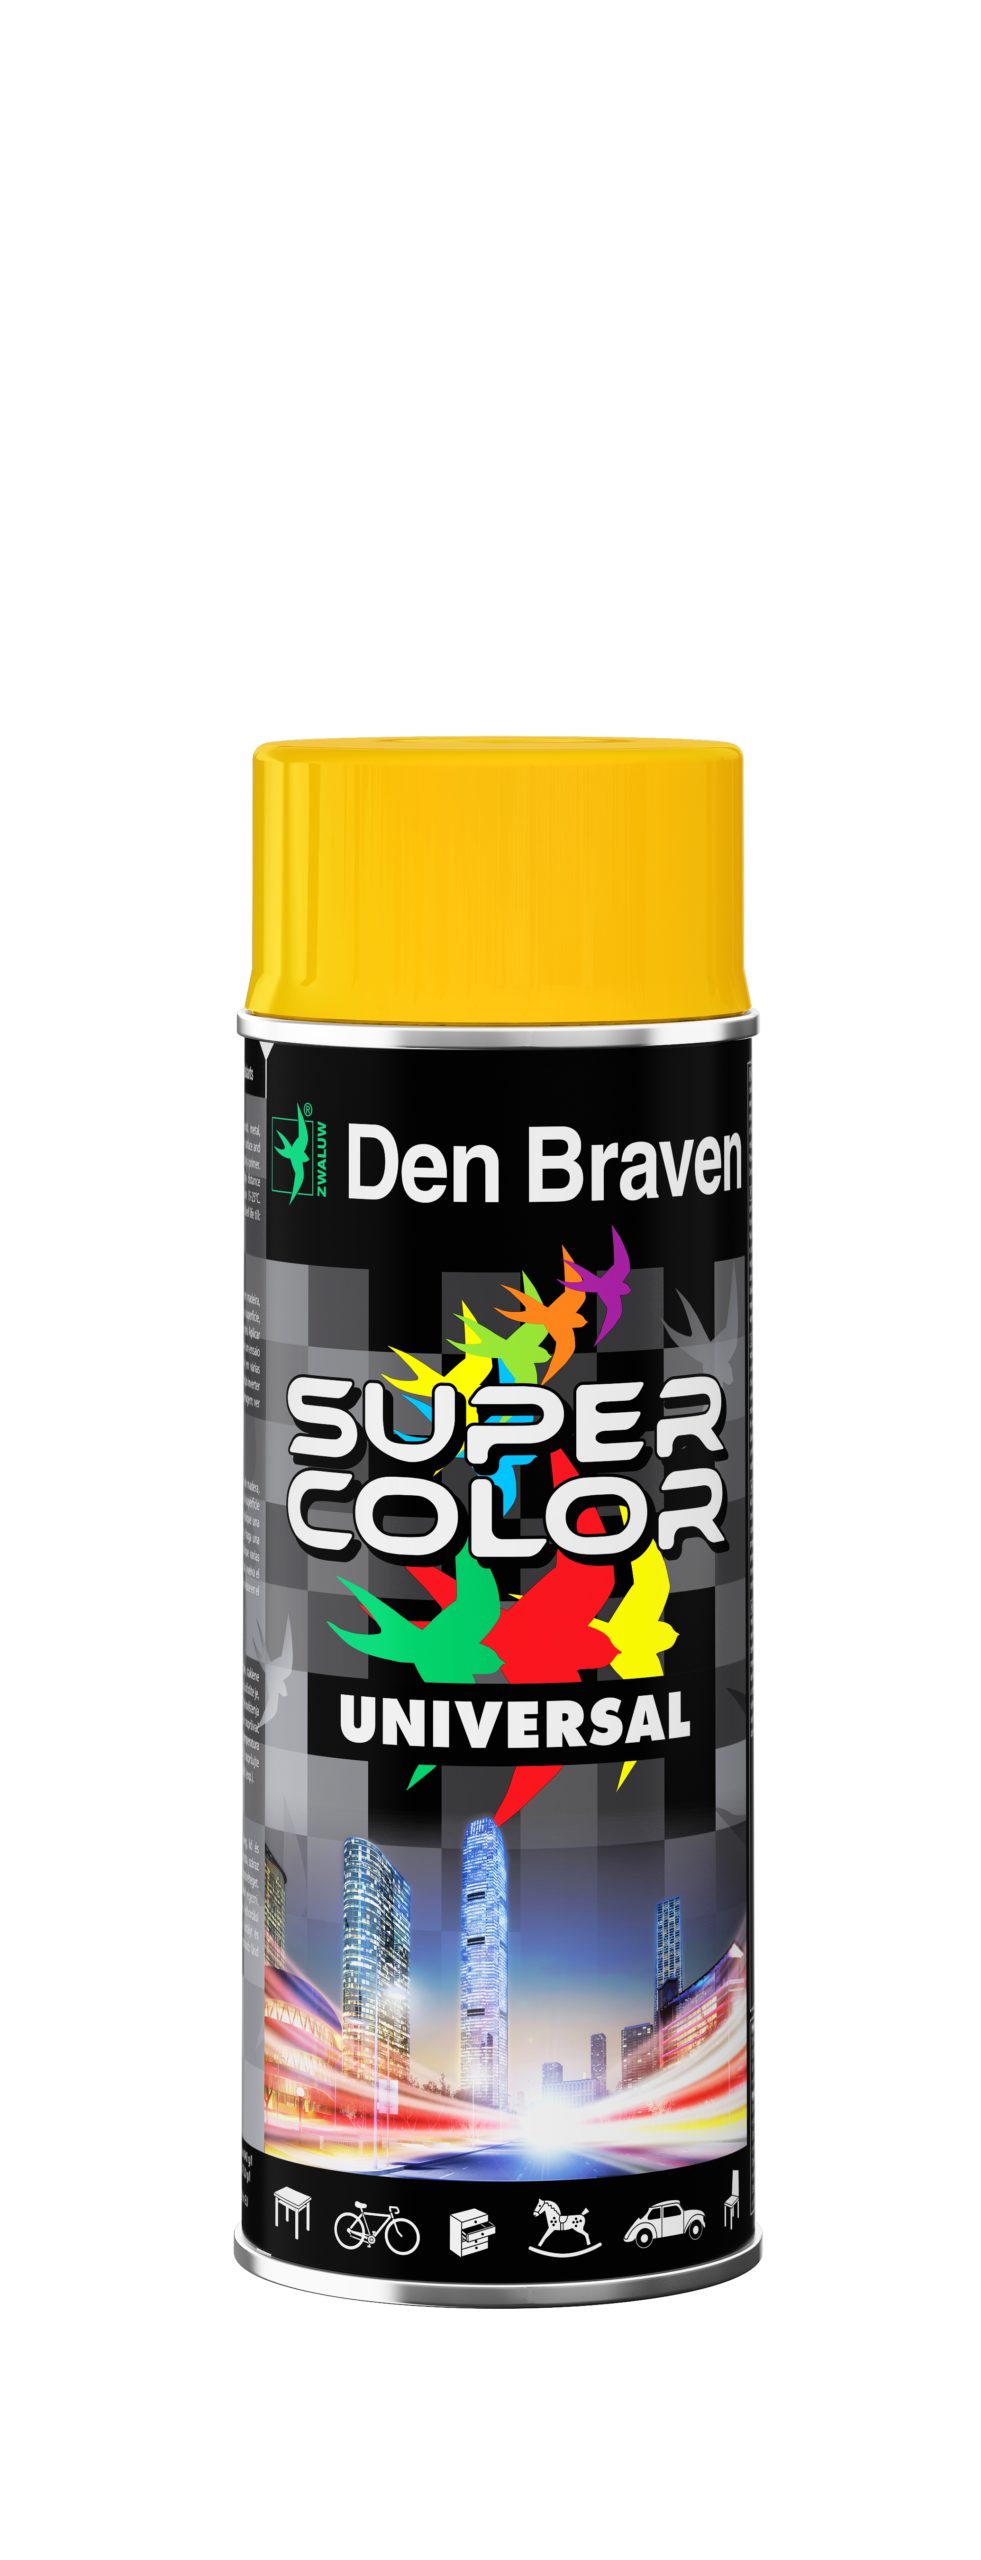 Siedem sposobów na idealny kolor – lakiery w spray’u Super Color firmy Den Braven , malowanie, den braven, kolor, super color - Malowanie to jeden z prostszych i szybszych sposobów na odświeżenie, zmianę koloru, czy nawet naprawę niewielkich uszkodzeń wielu przedmiotów znajdujących się w gospodarstwie domowym. Dobra farba przydaje się zarówno w pracach remontowo-budowlanych, konserwatorskich oraz naprawczych, jak również i hobbystycznych. Tylko jak uzyskać idealne pokrycie i trwały kolor bez smug? Z pomocą przychodzi seria specjalistycznych lakierów w spray’u Super Color firmy Den Bravena, która stanie na wysokości niejednego z malarskich zadań.